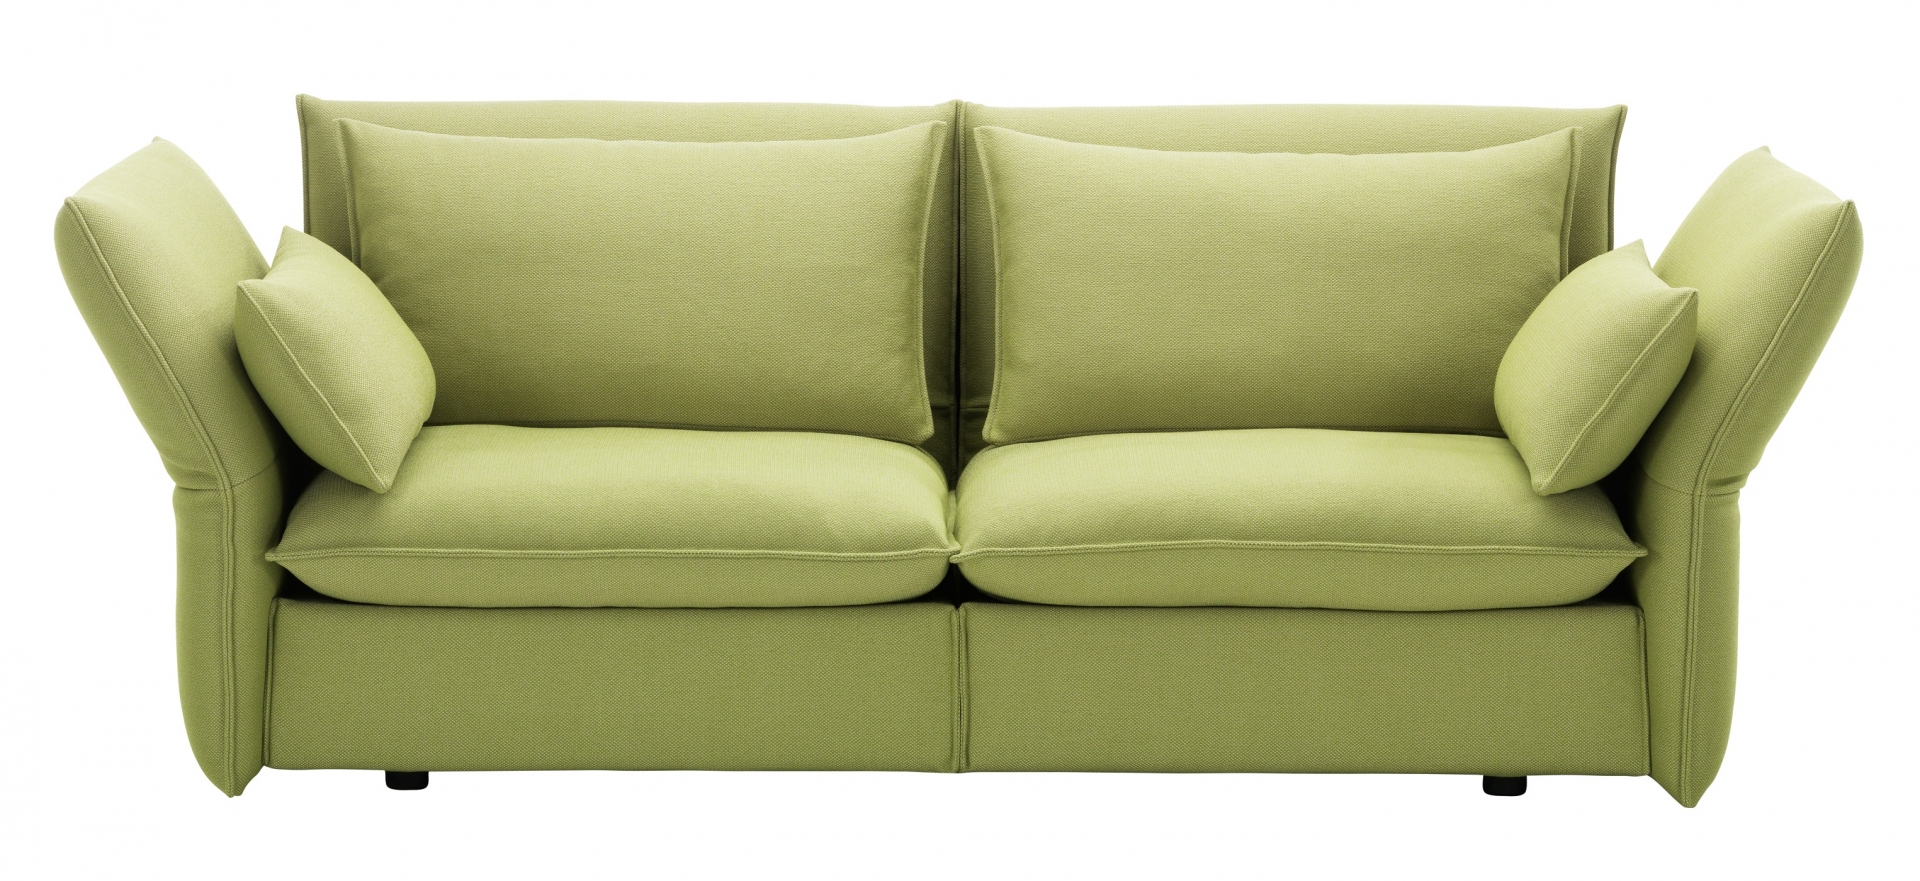 Vitra designové sedačky Mariposa (šířka 211 cm)